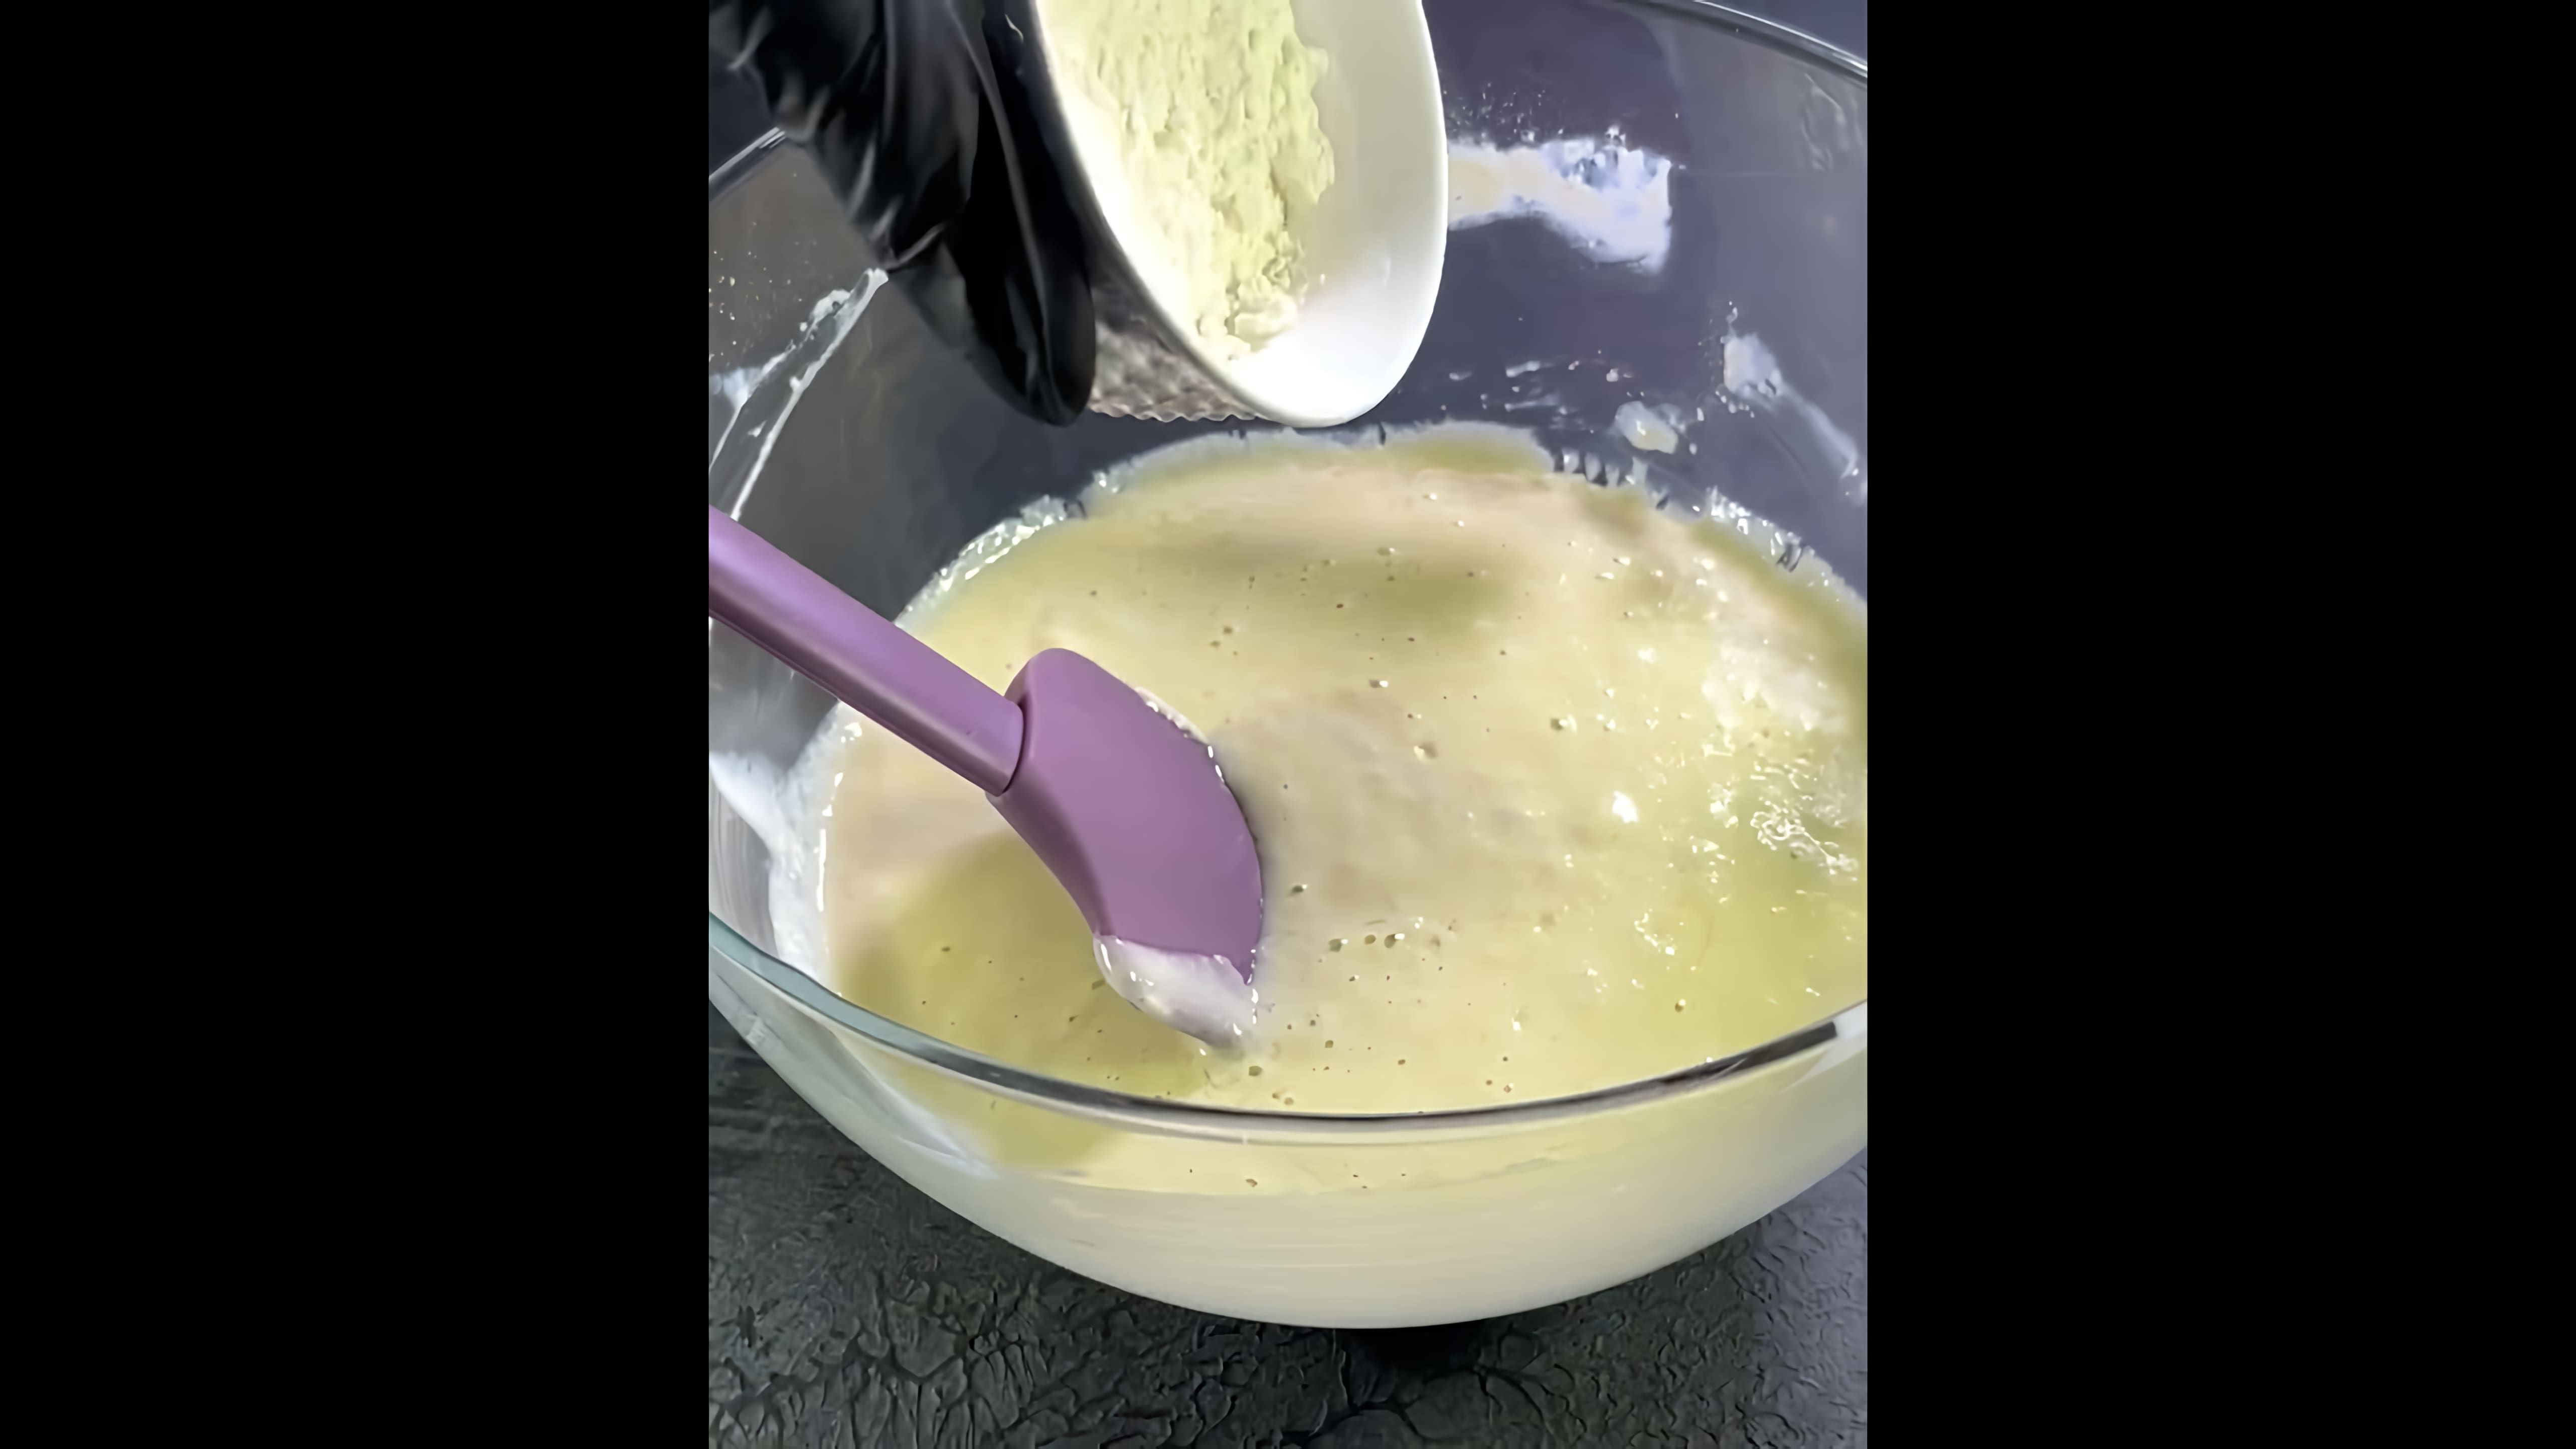 В этом видео демонстрируется рецепт приготовления манника "Зебра" на кефире без яиц